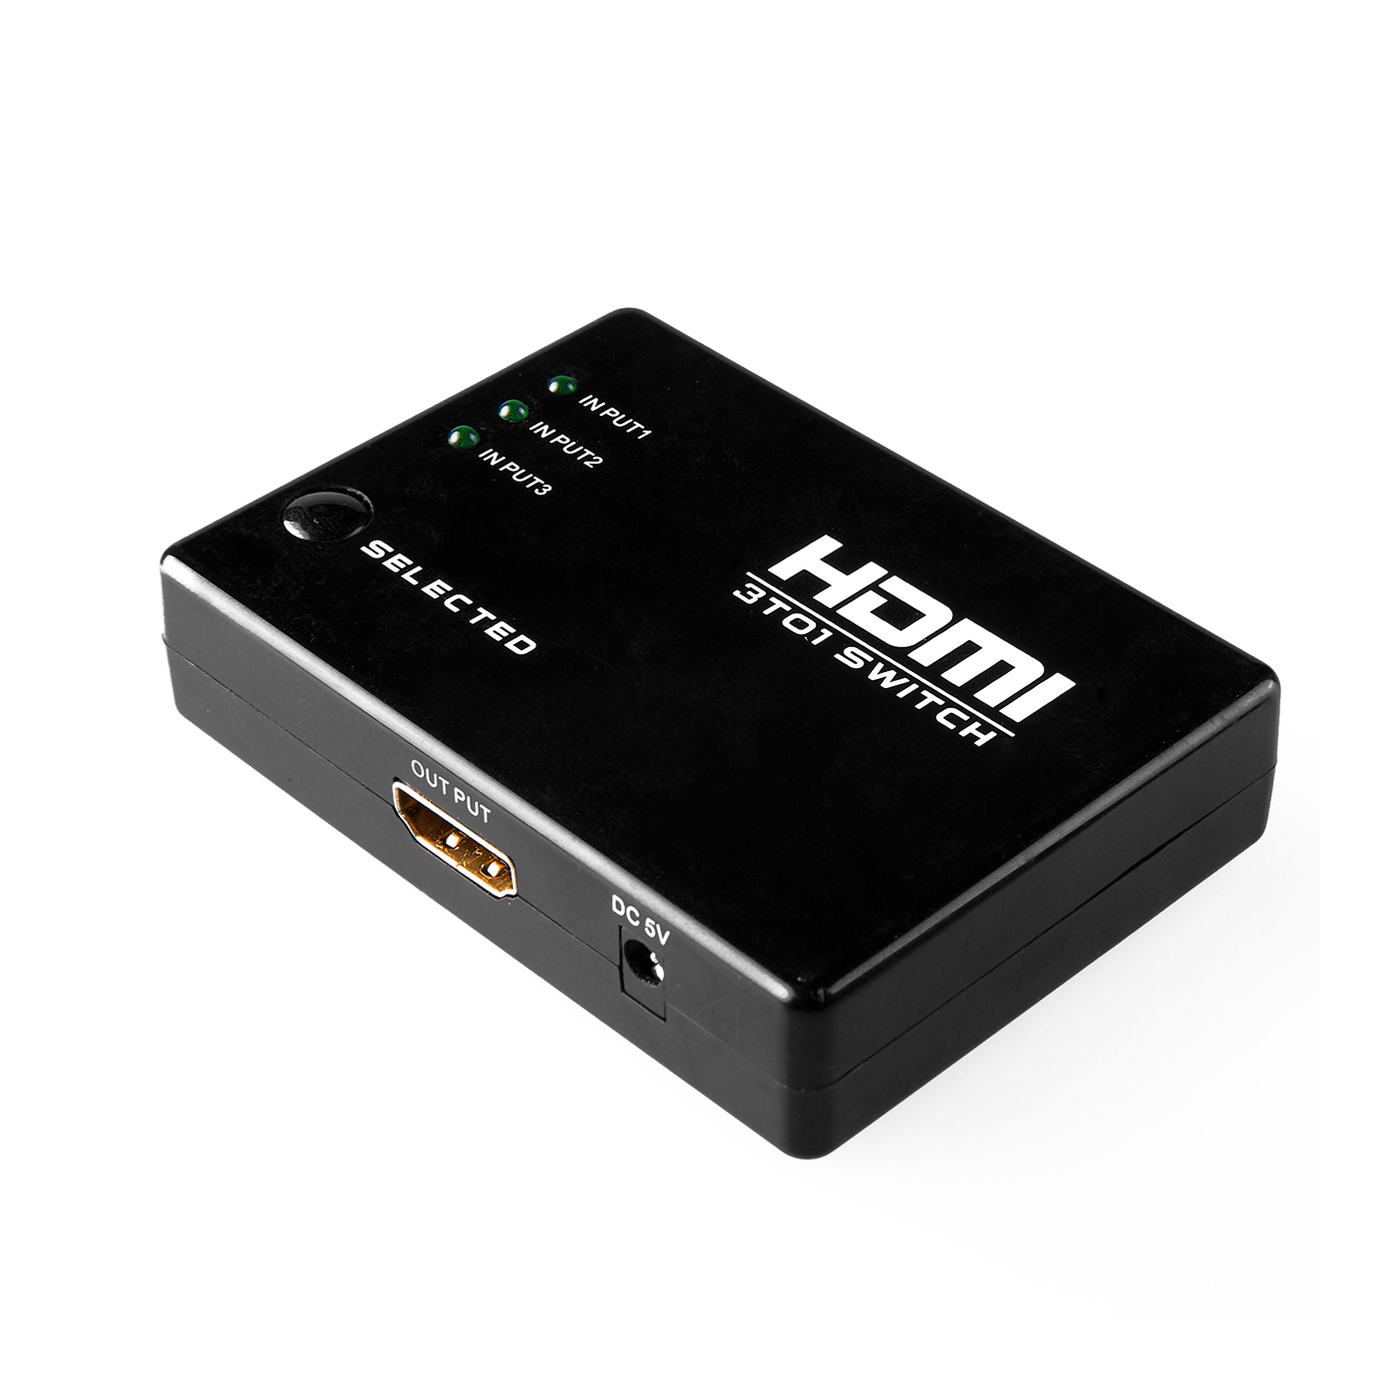  HDMI GCR v301, черный -  по низкой цене в интернет .